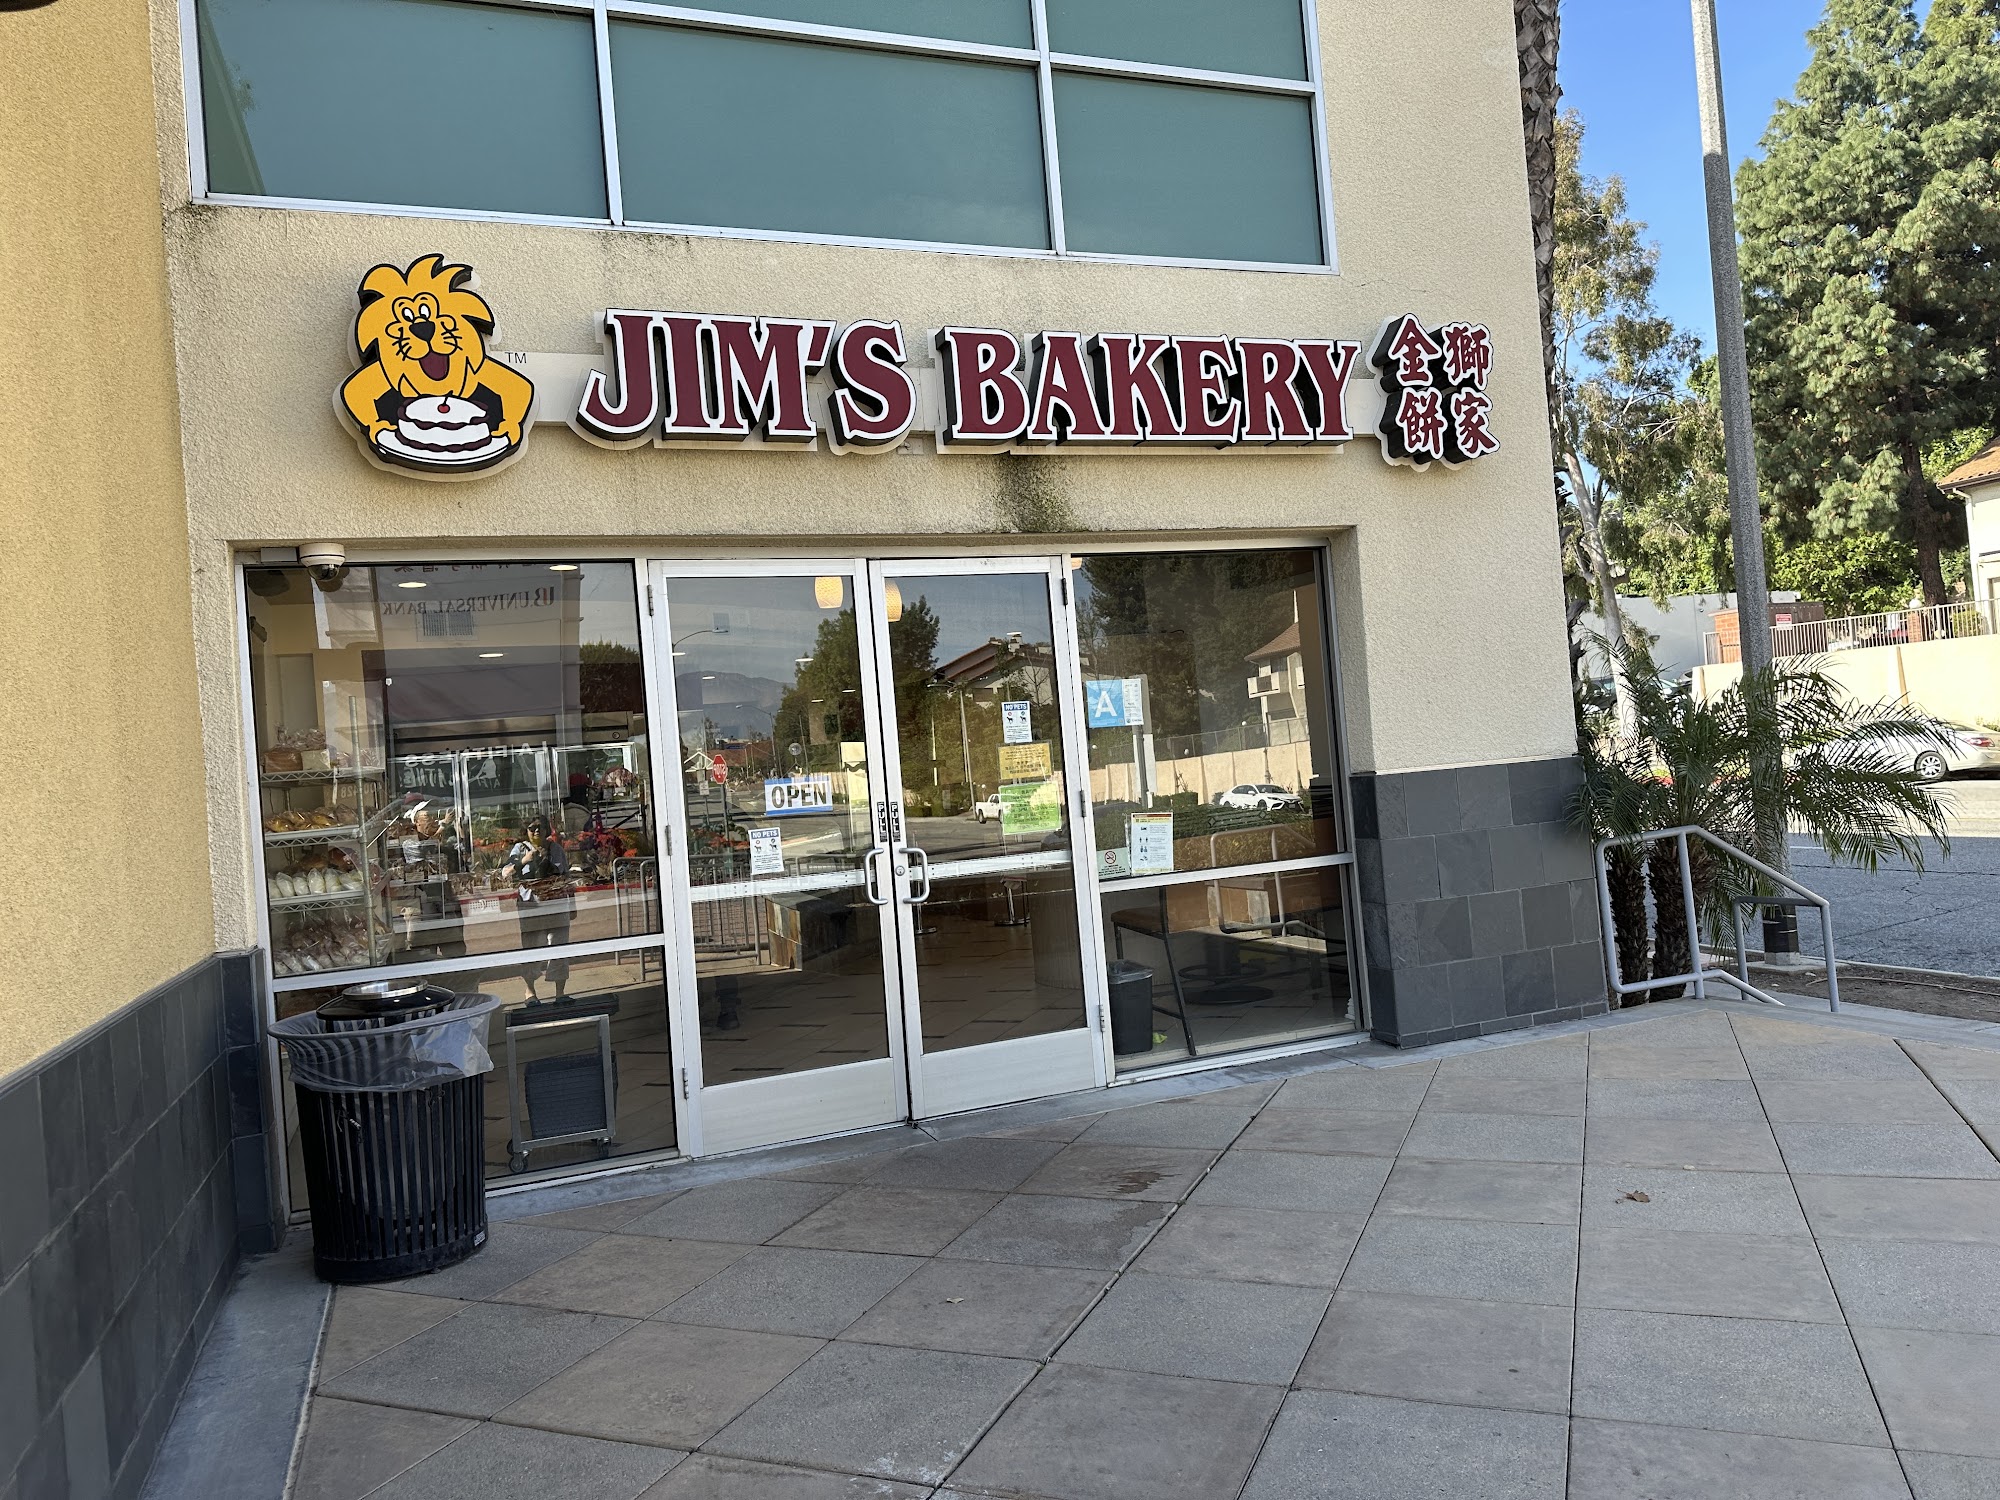 Jim's Bakery